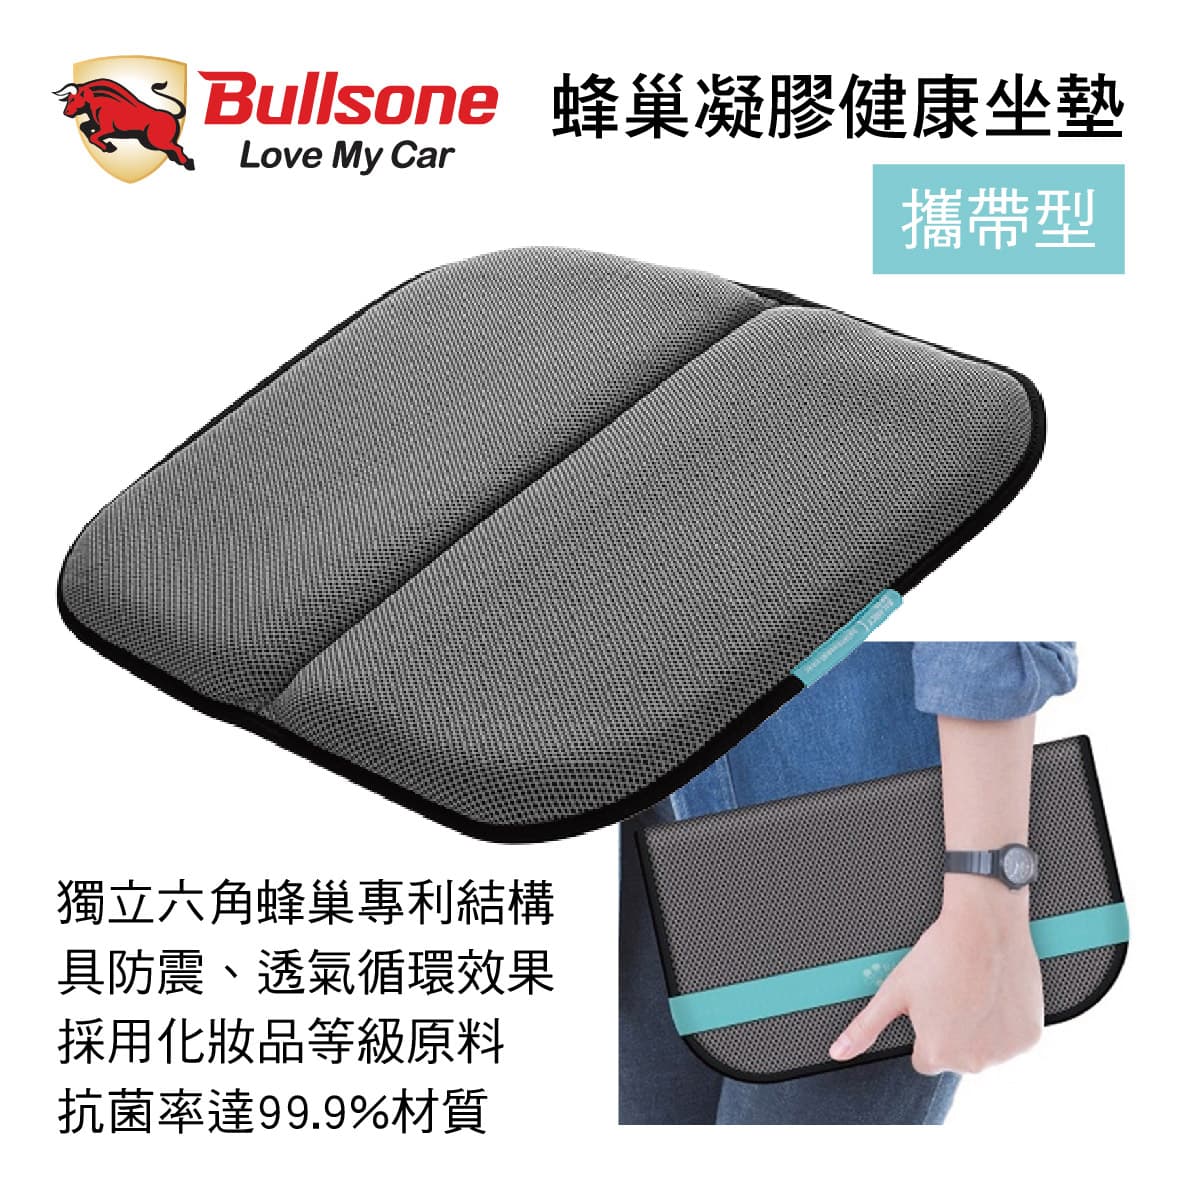 真便宜 Bullsone勁牛王 M27T5004 蜂巢凝膠健康坐墊-攜帶型(灰)